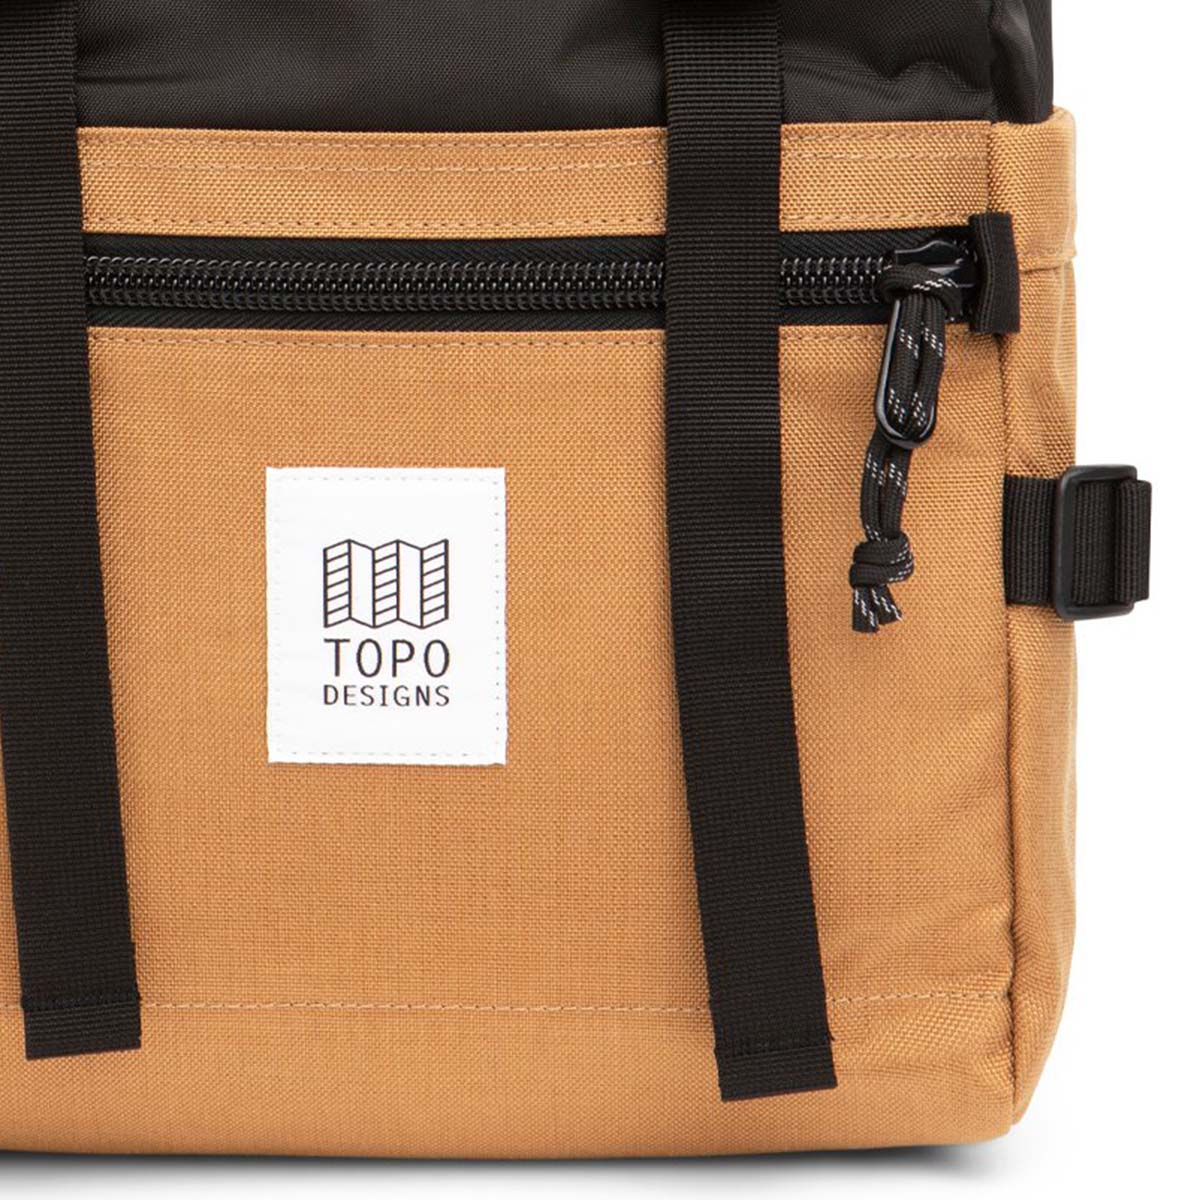 Topo Designs Rover Pack Classic Khaki/Black, der ideale Rucksack für den täglichen Gebrauch